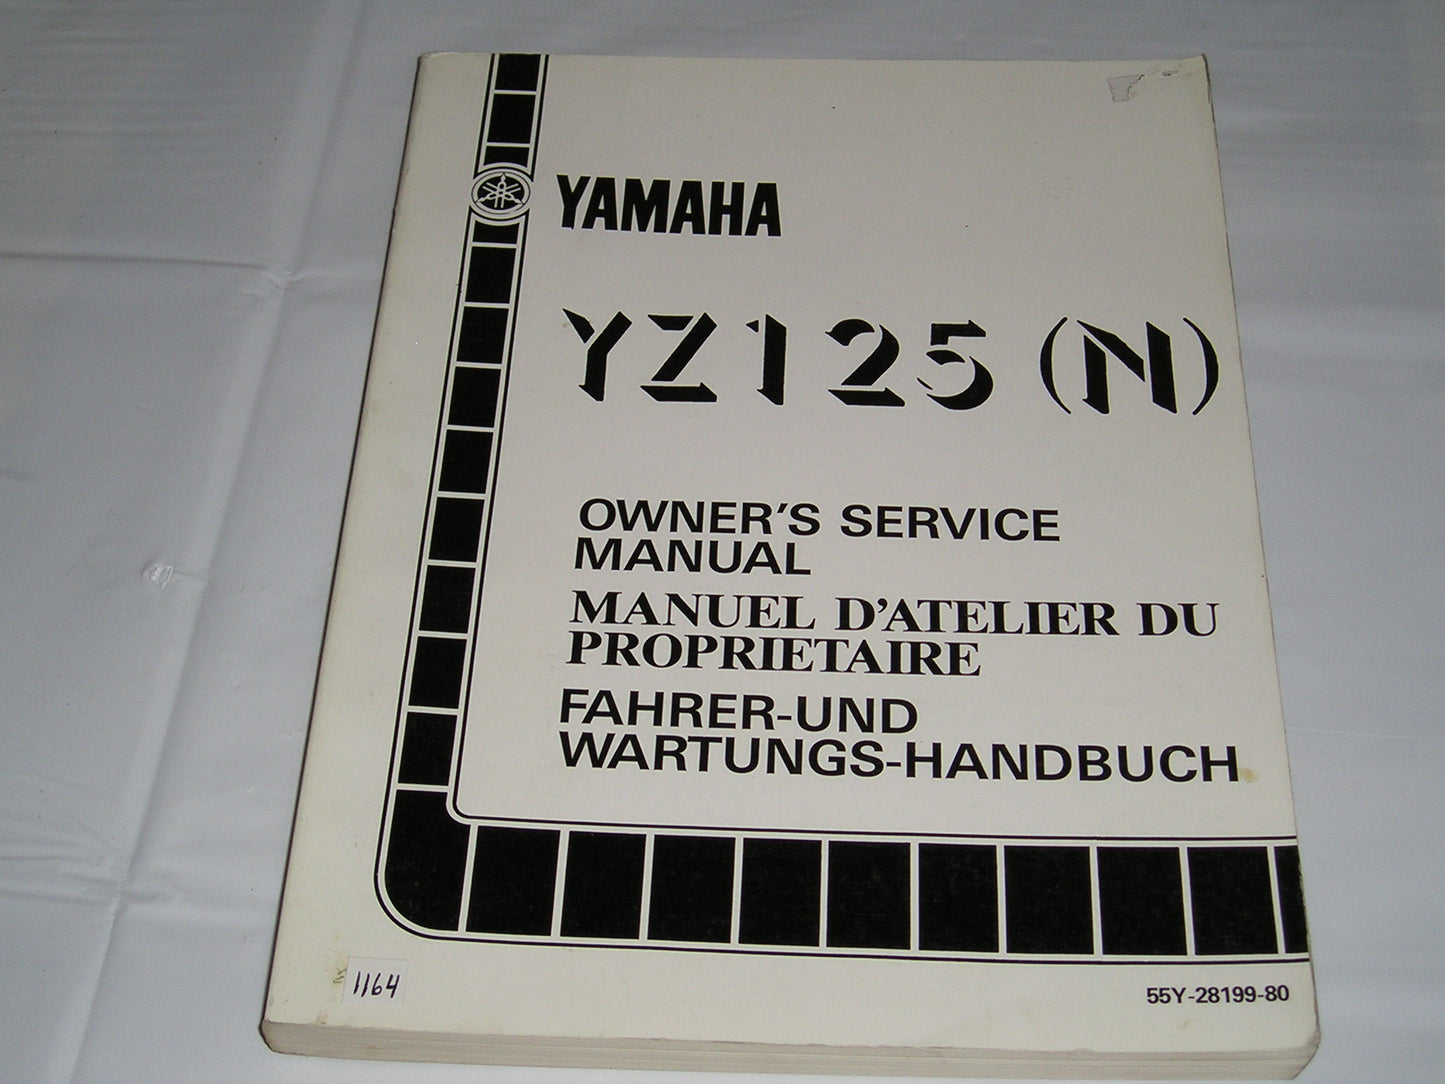 YAMAHA YZ125N  YZ125 N  1985  Owner's Service Manual  55Y-28199-80  #1164